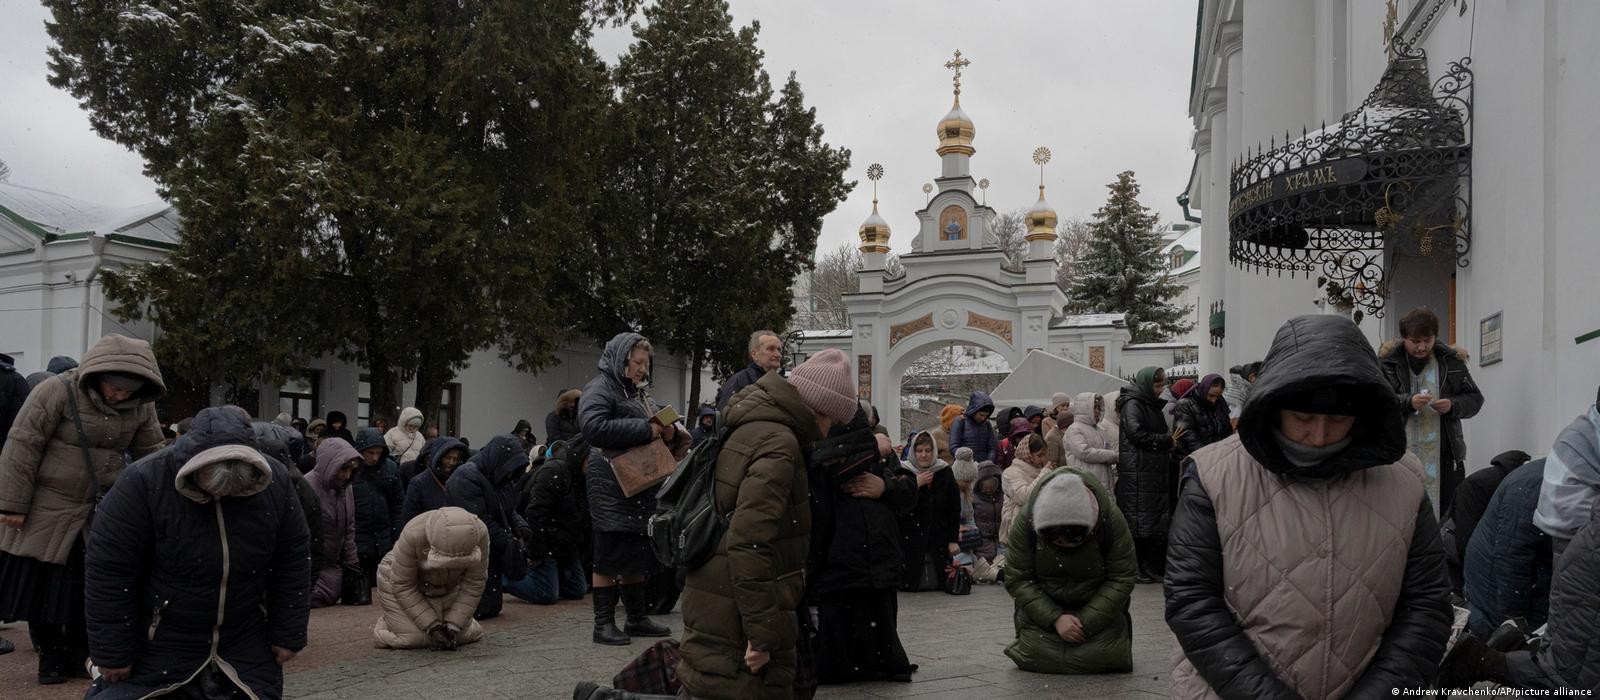 
Guerra na Ucrânia acirra tensão entre igreja ortodoxa e Kiev